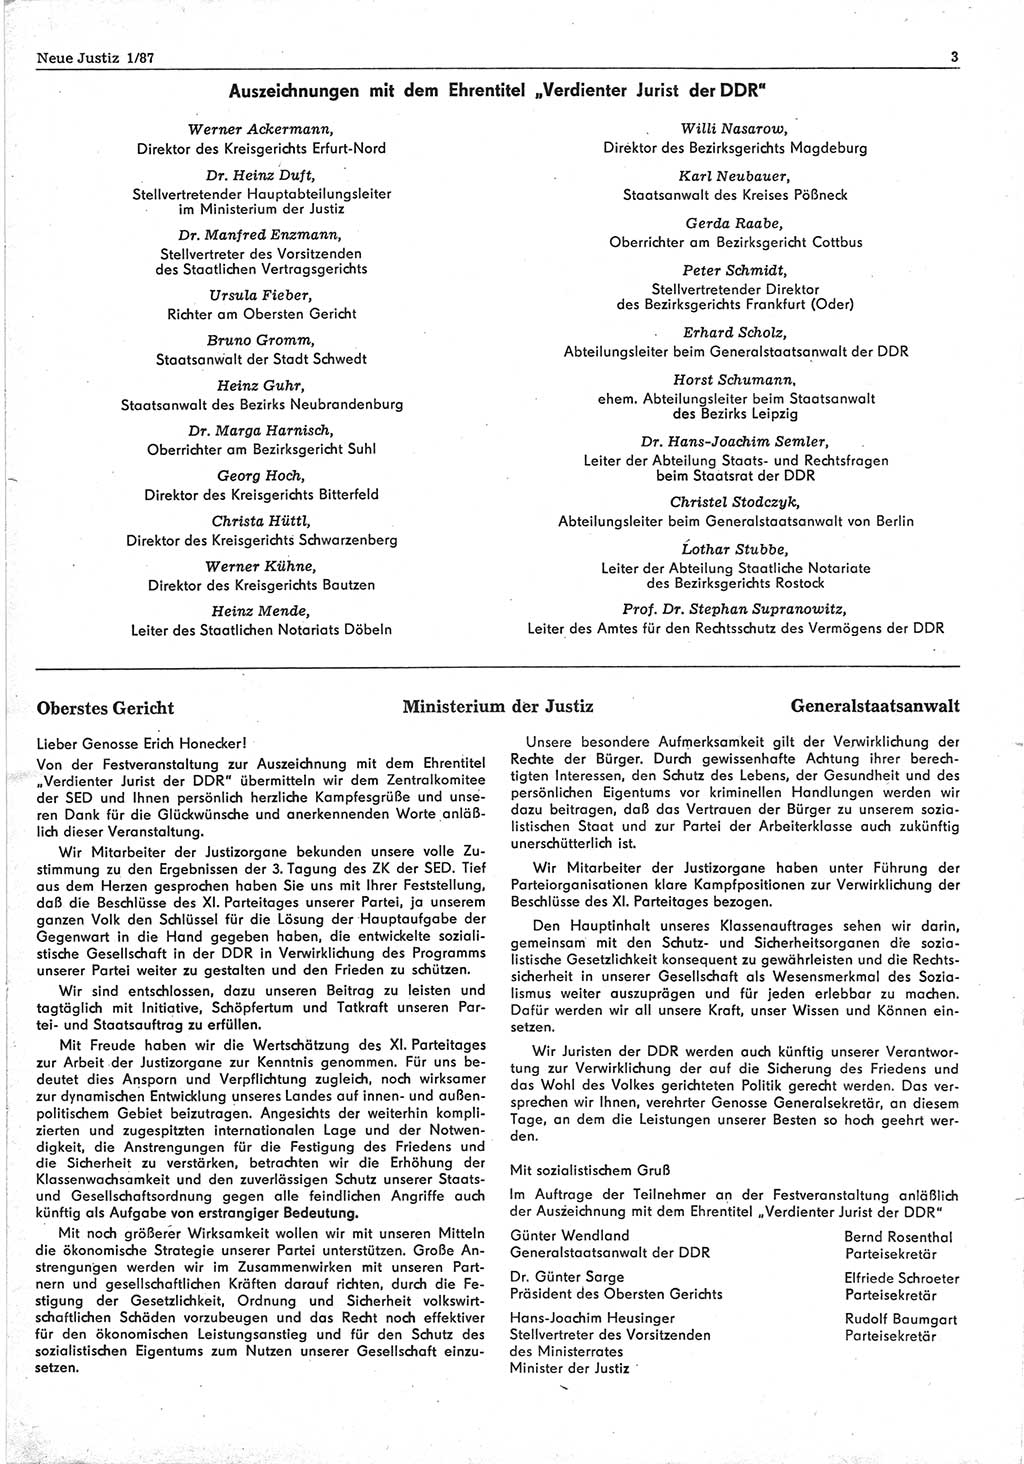 Neue Justiz (NJ), Zeitschrift für sozialistisches Recht und Gesetzlichkeit [Deutsche Demokratische Republik (DDR)], 41. Jahrgang 1987, Seite 3 (NJ DDR 1987, S. 3)